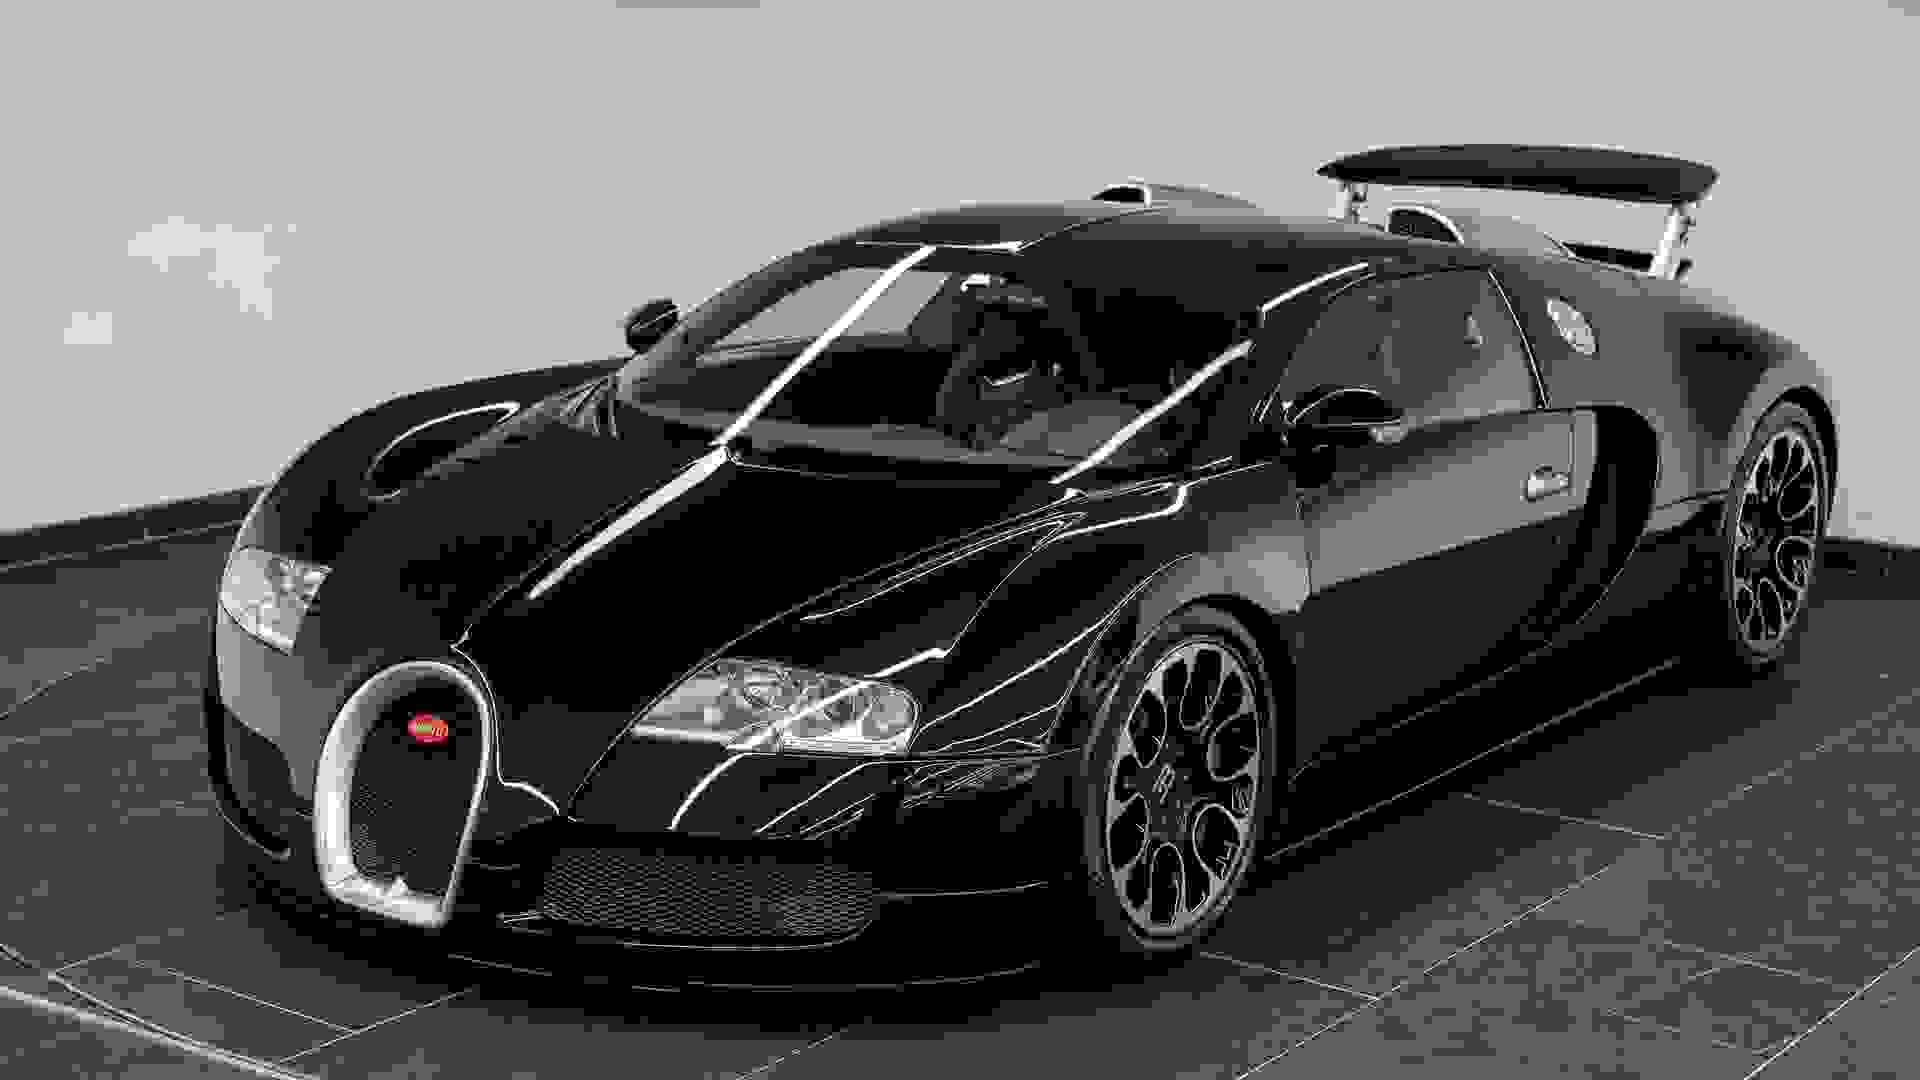 Bugatti Veyron Photo 75b02a08-876c-42c6-8f1f-0d2542a5b50f.jpg